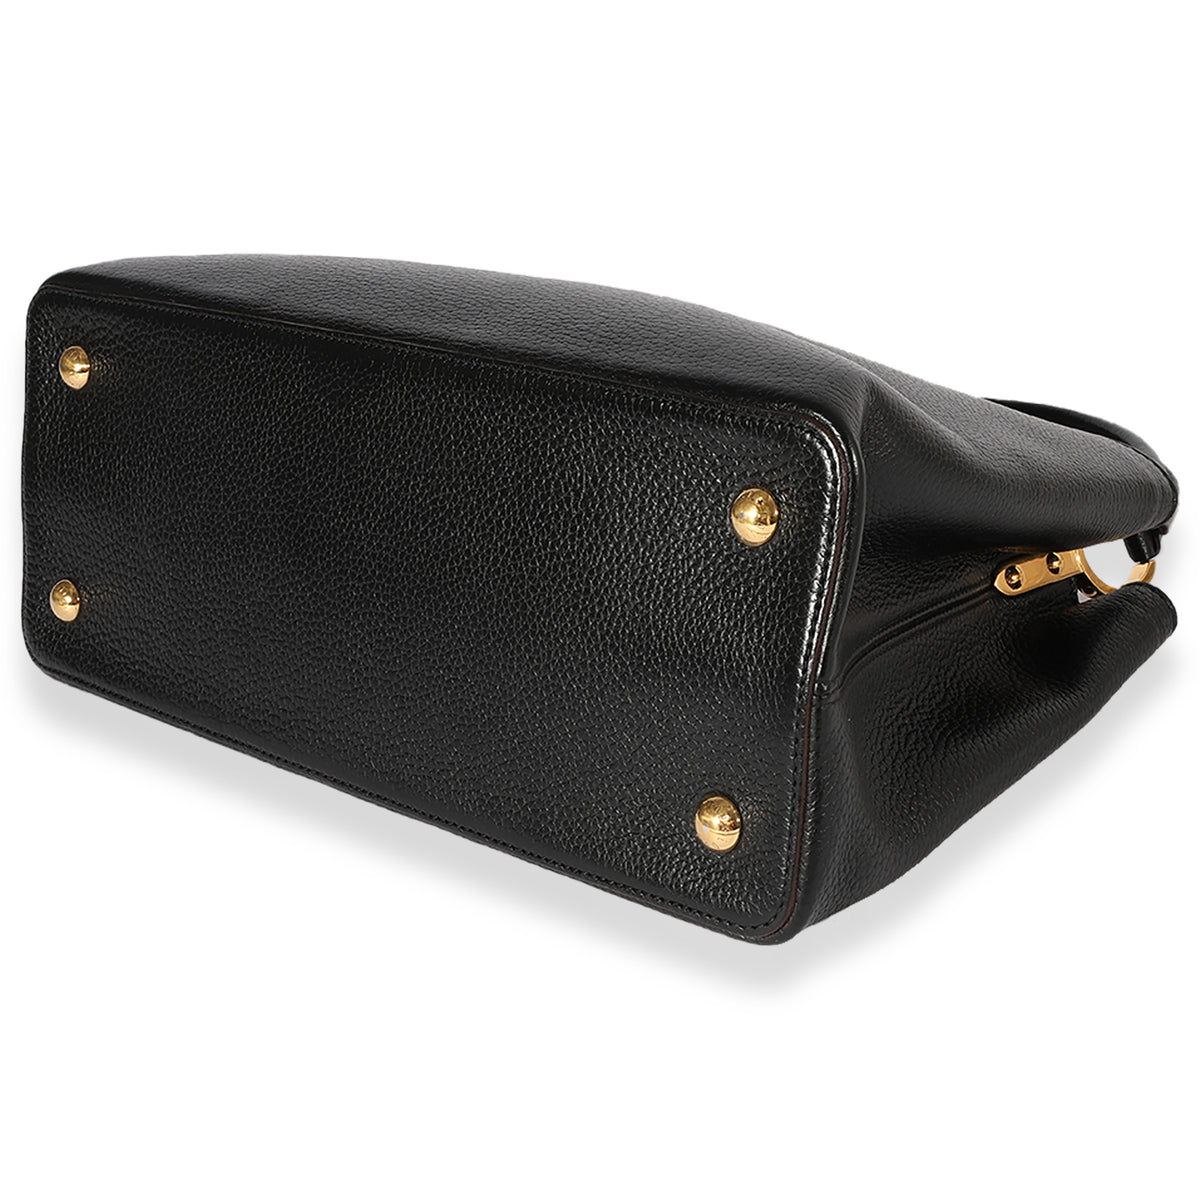 Louis Vuitton Black Leather Capucines Wallet, myGemma